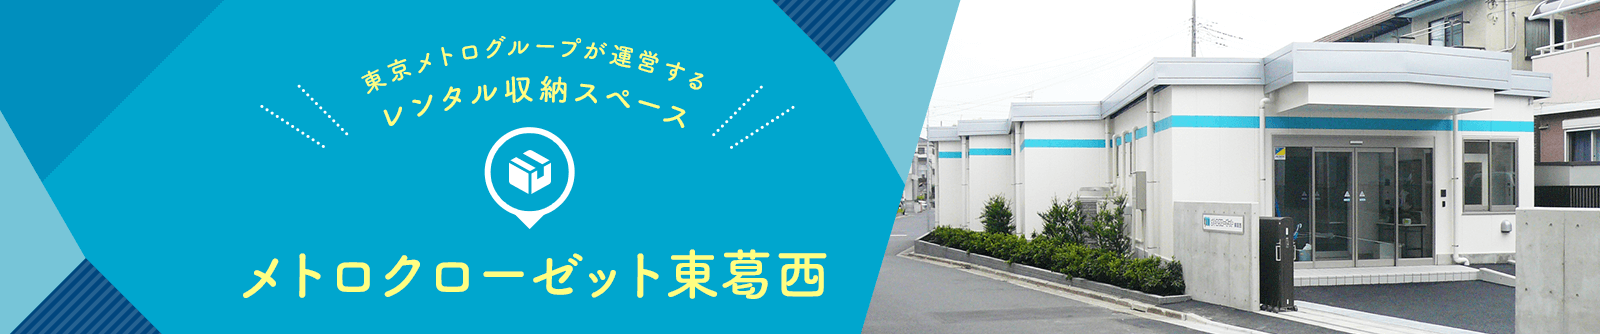 東京メトログループが運営するレンタル収納スペース メトロクローゼット東葛西